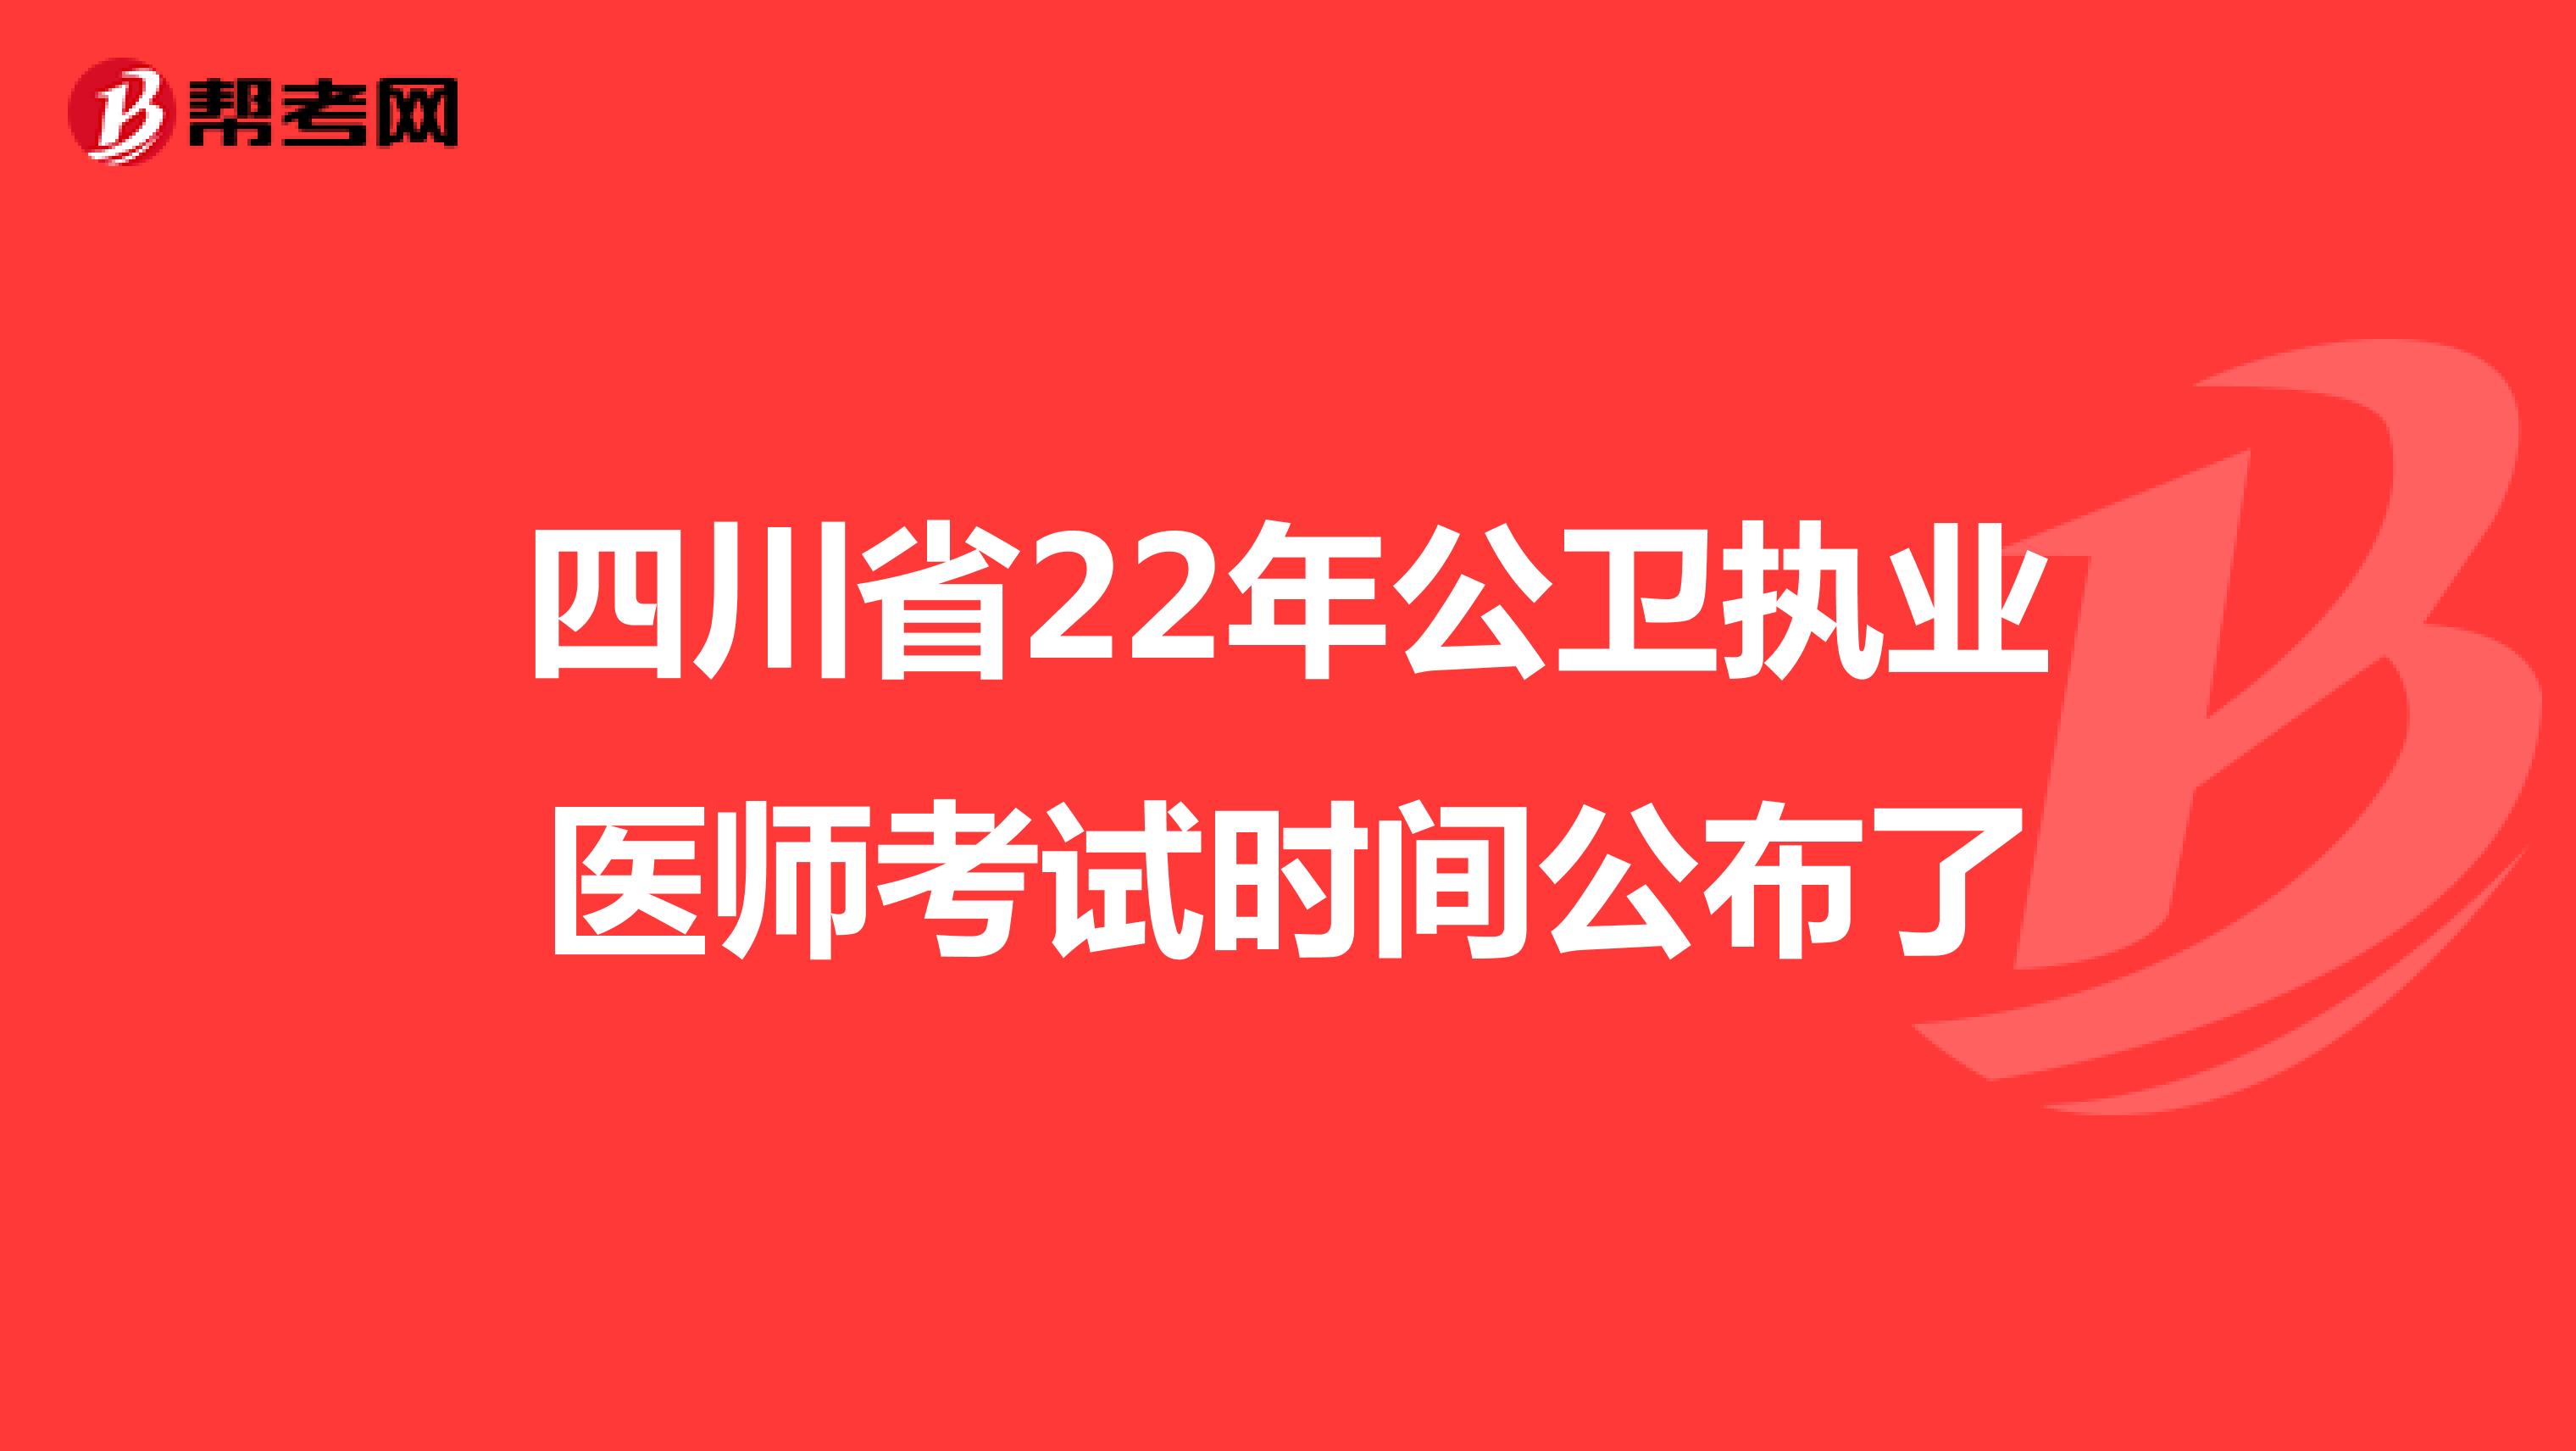 四川省22年公卫执业医师考试时间公布了